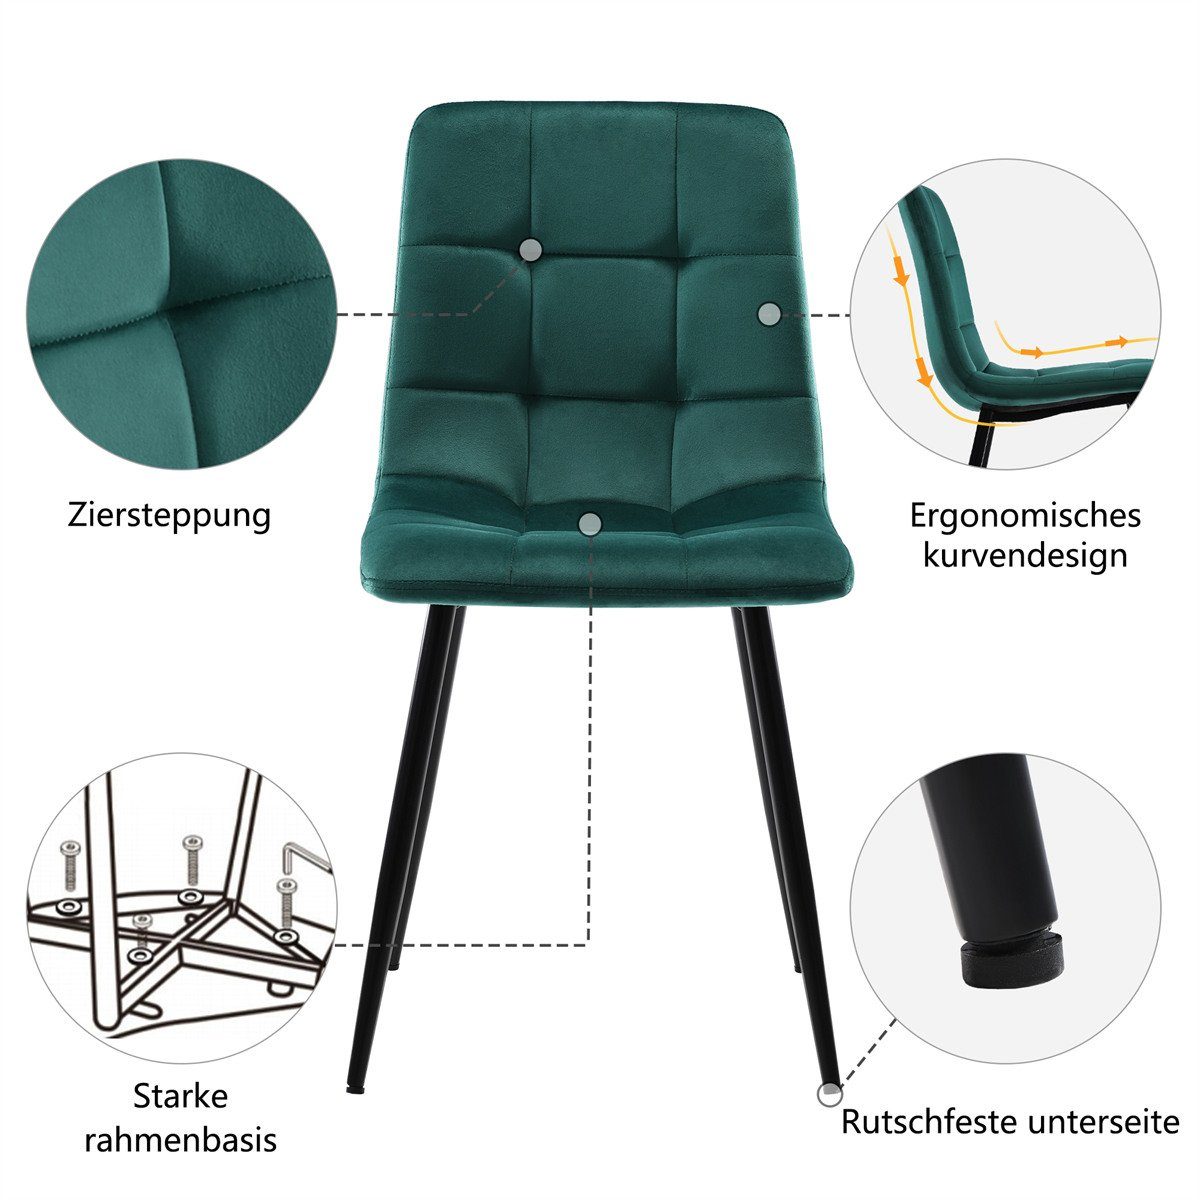 XDeer Esszimmerstuhl 4er Set Esszimmerstühle,Polsterstuhl Sitzfläche mit Metall,Leicht Samt aus Gruen Gestell zu Rückenlehne, montieren Küchenstuhl aus